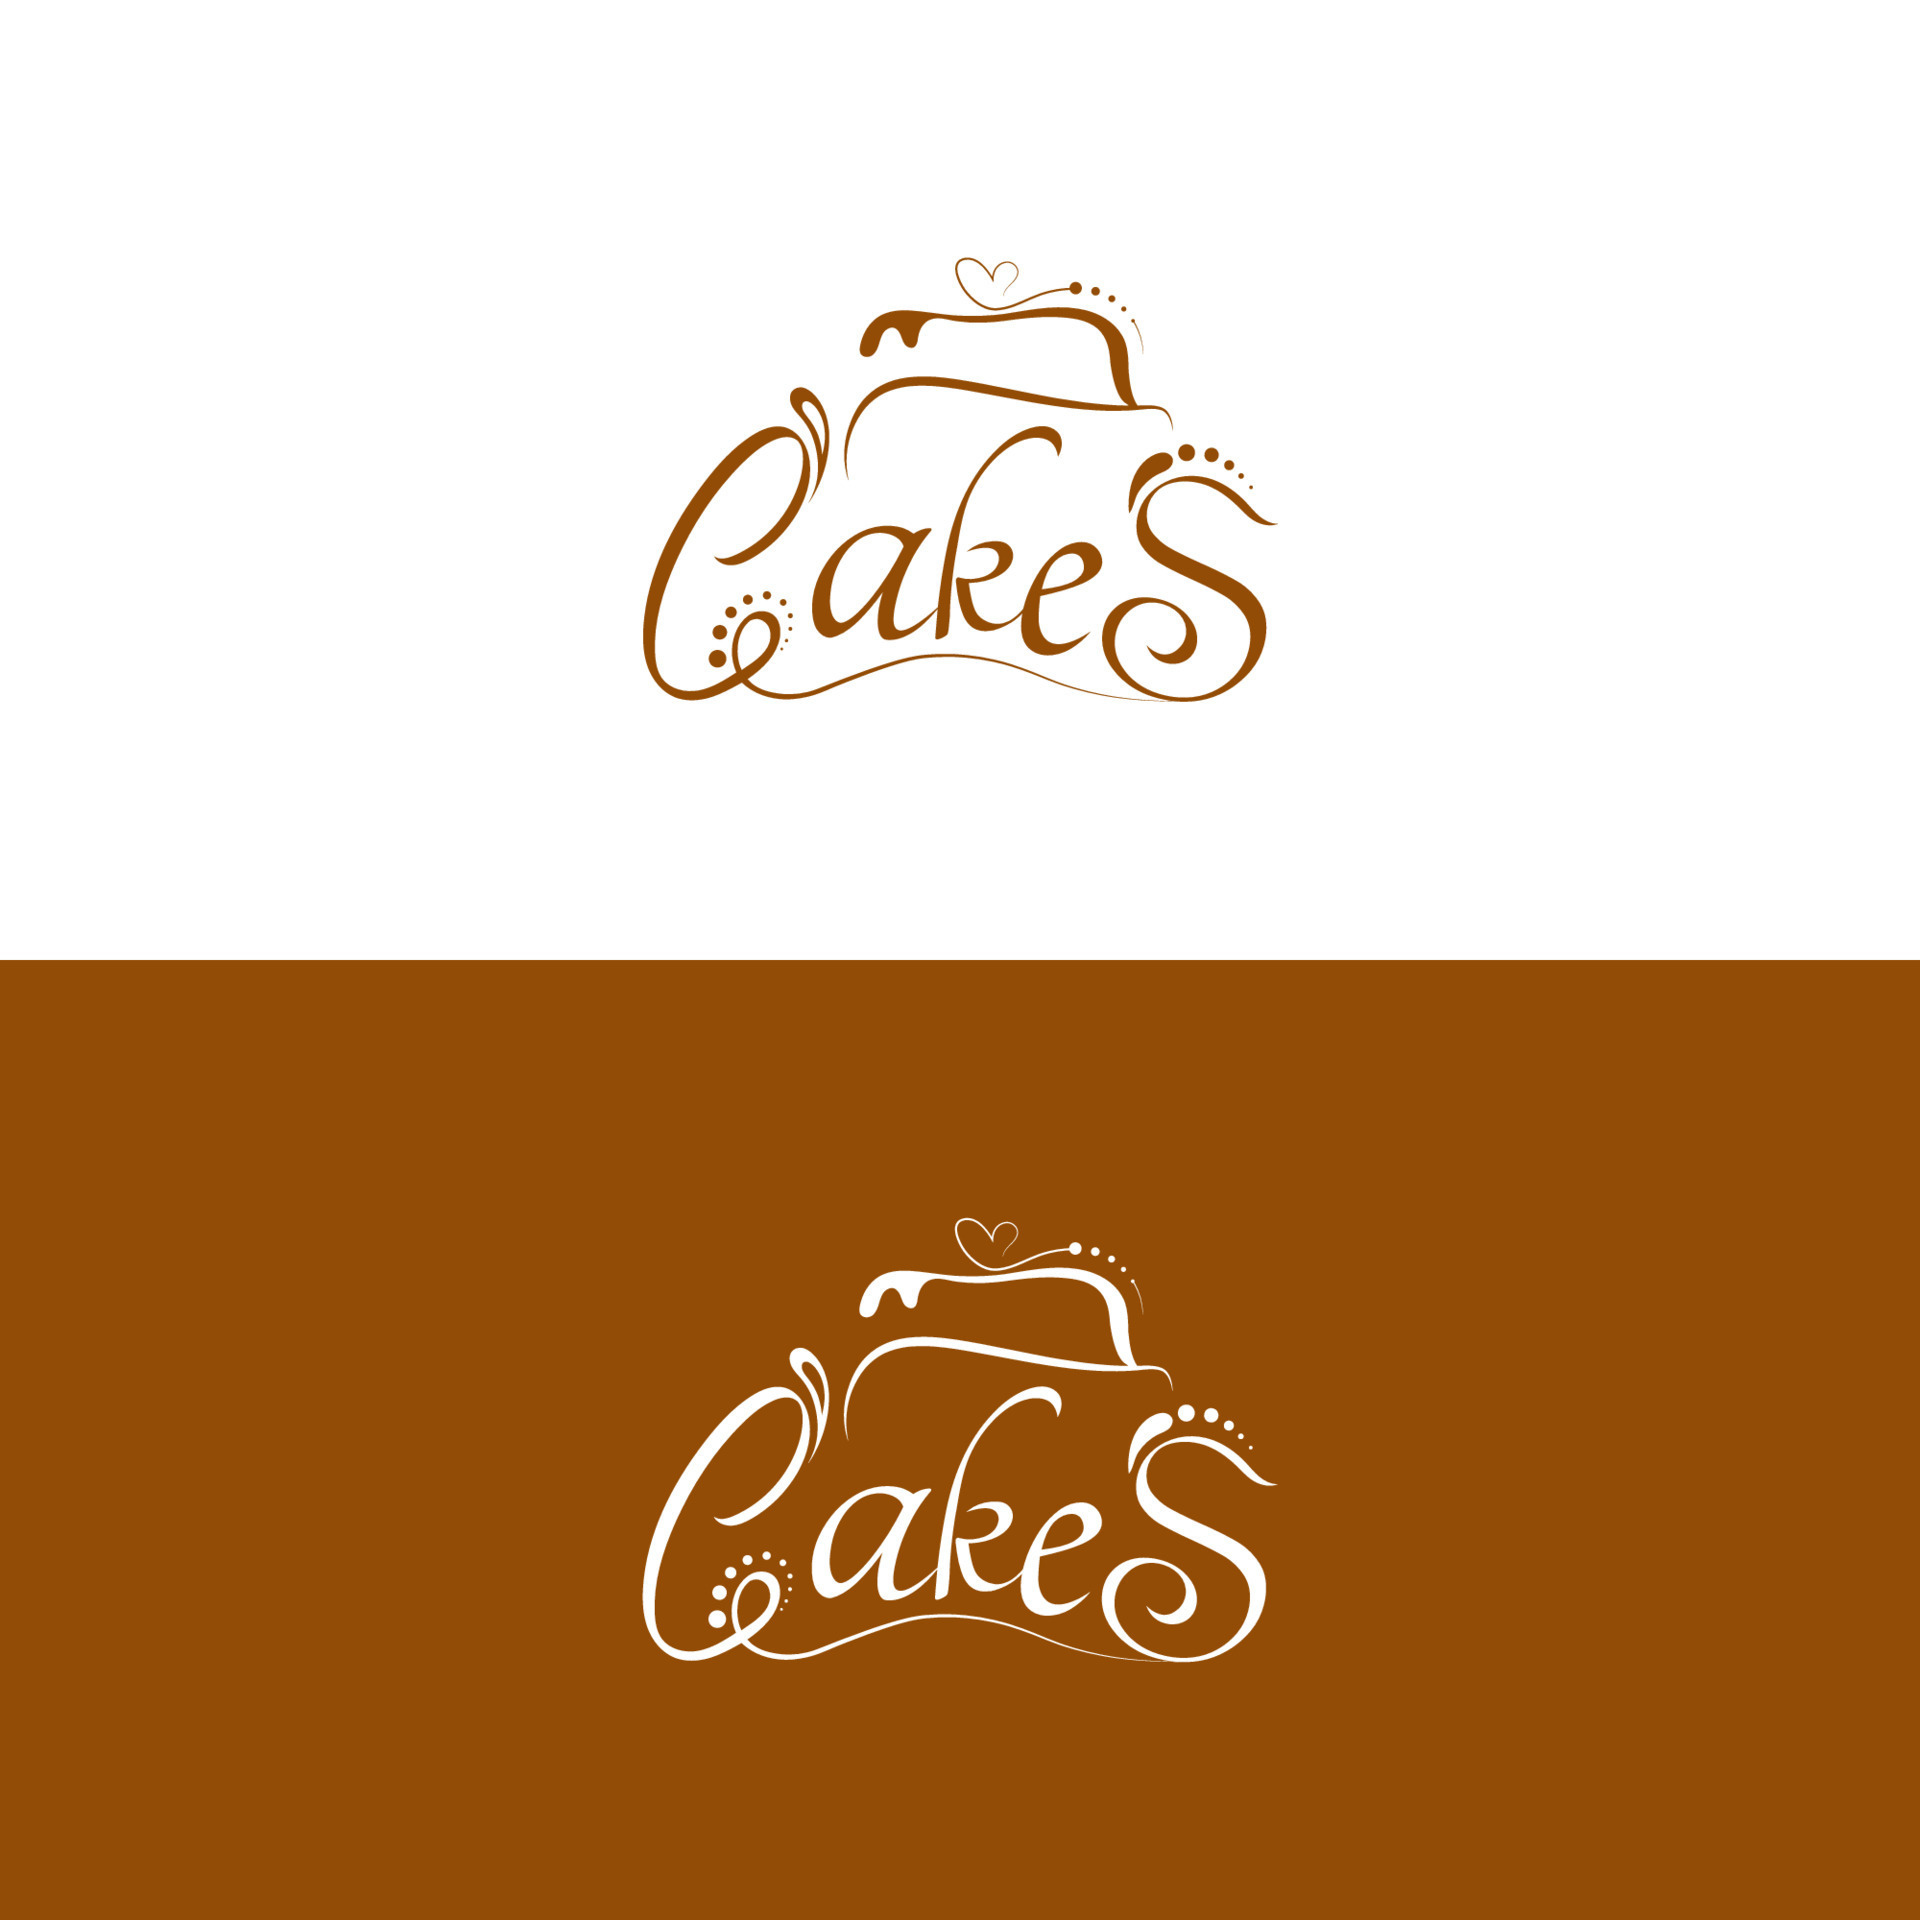 Customize 163+ Cupcake Logo Templates Online - Canva